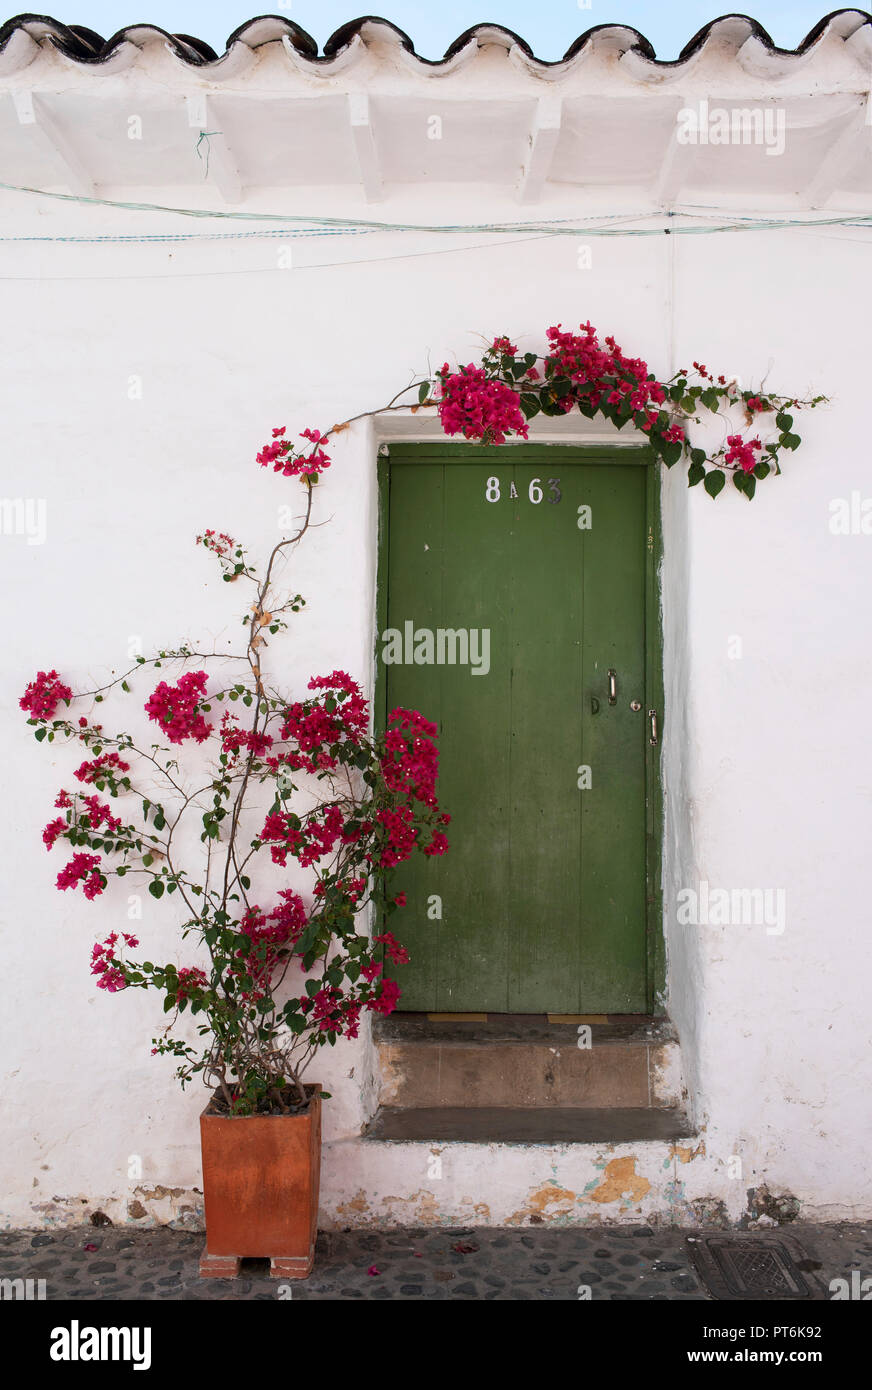 Schönes Haus, Einrichtung von rustikalen Tür und Bougainvillea Pflanze hinaufklettern auf der Wand. Santa Fe de Antioquia, Kolumbien. Sep 2018 Stockfoto